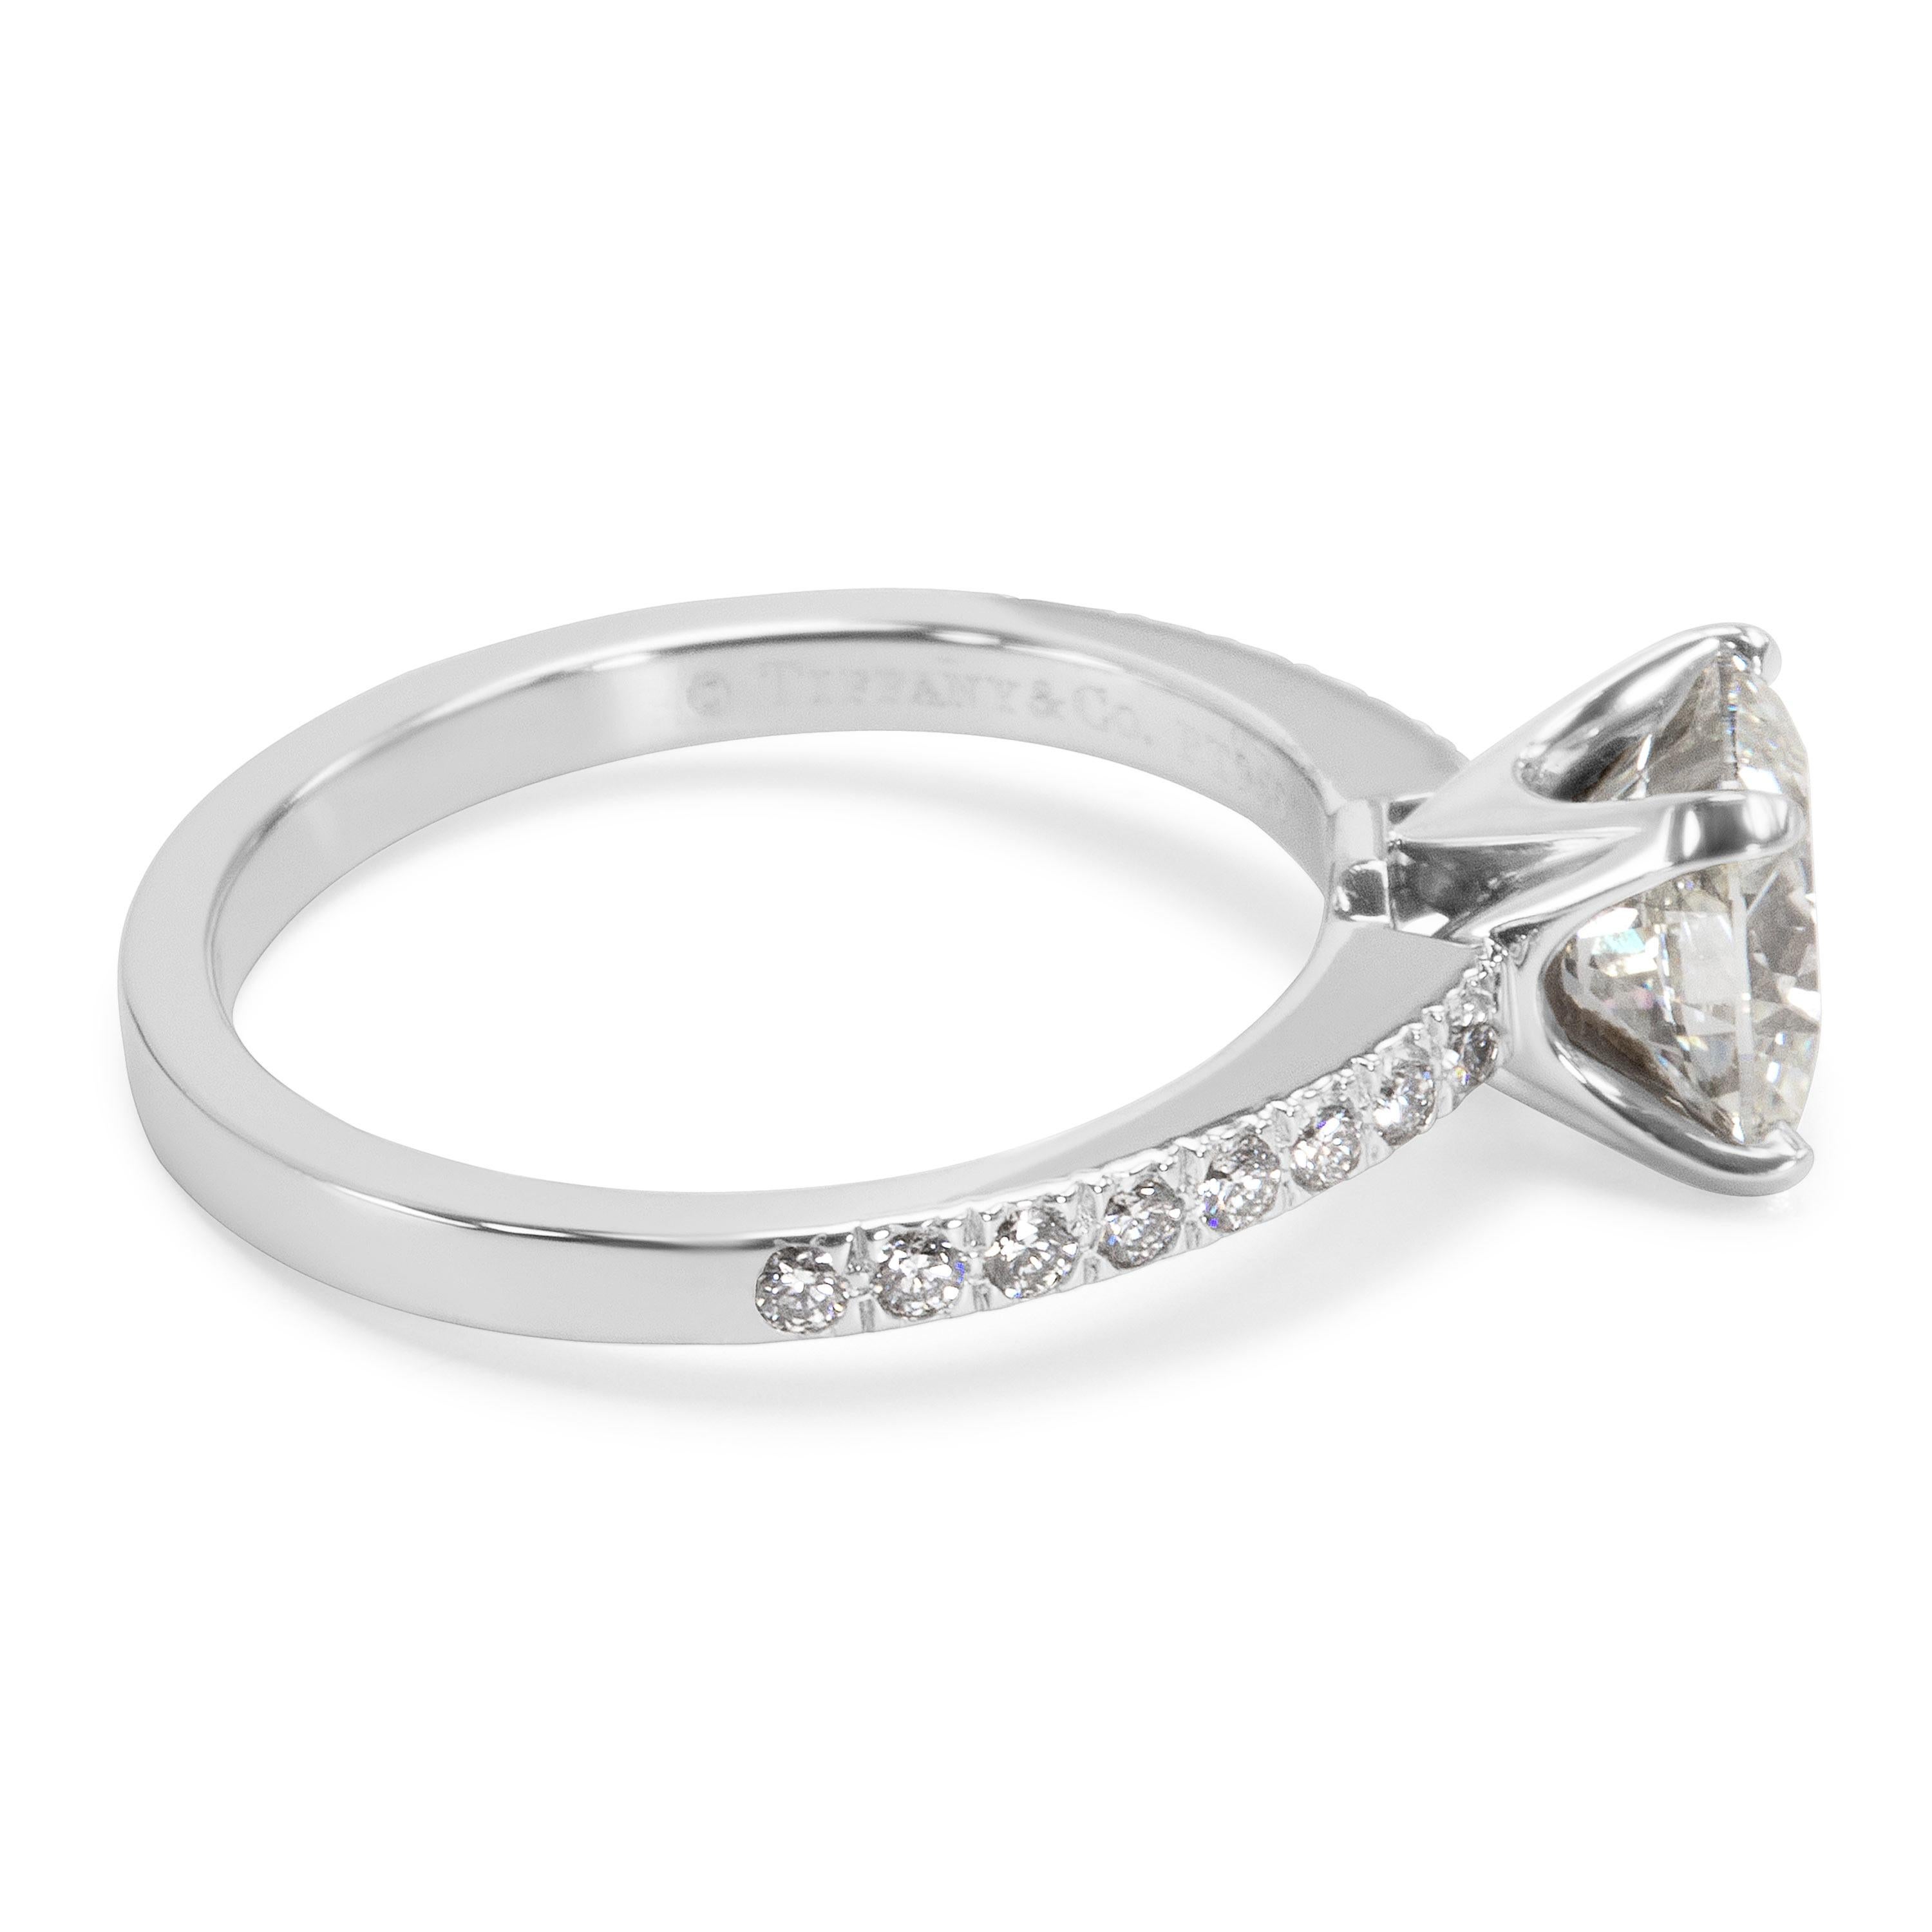 Women's Tiffany & Co. Novo Cushion Diamond Engagement Ring in Platinum I/VS1 1.51 Carat